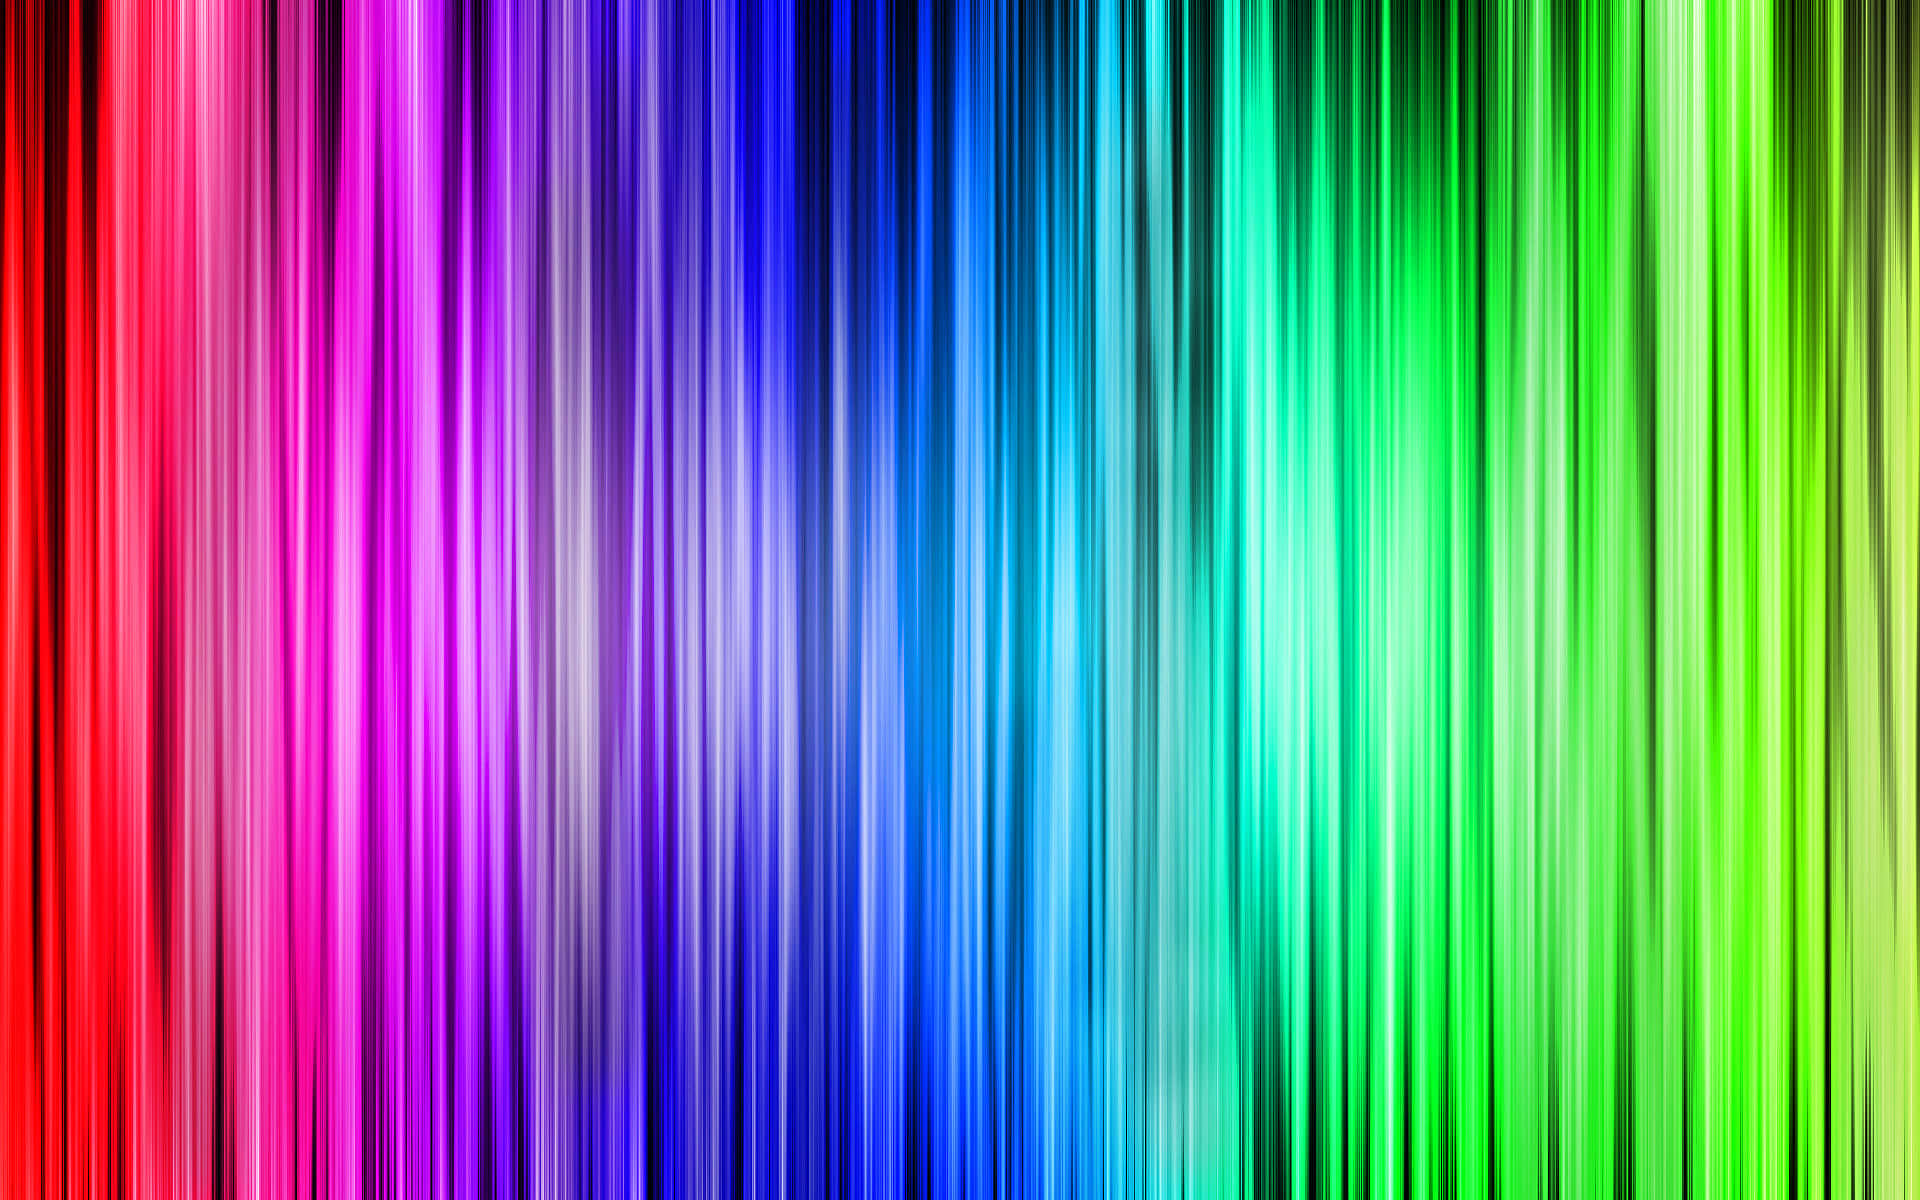 Umplano De Fundo Colorido Com Um Arco-íris De Cores